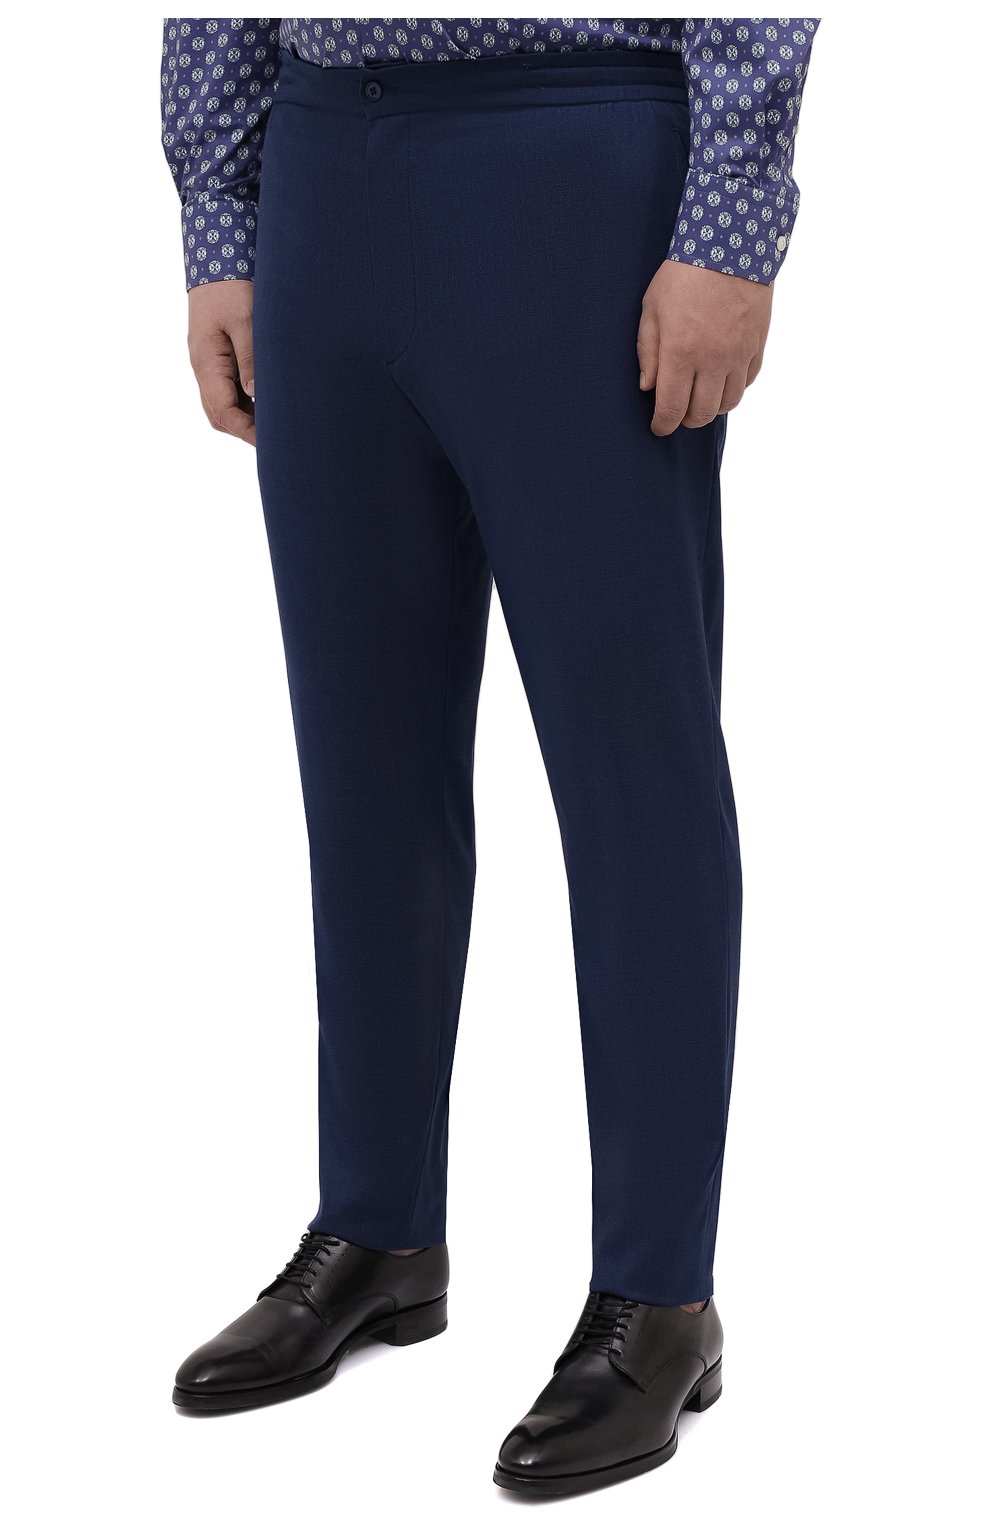 Мужские шерстяные брюки MARCO PESCAROLO синего цвета, арт. CHIAIAM/4328 | Фото 3 (Big sizes: Big Sizes; Материал внешний: Шерсть; Длина (брюки, джинсы): Стандартные; Стили: Классический; Случай: Формальный)